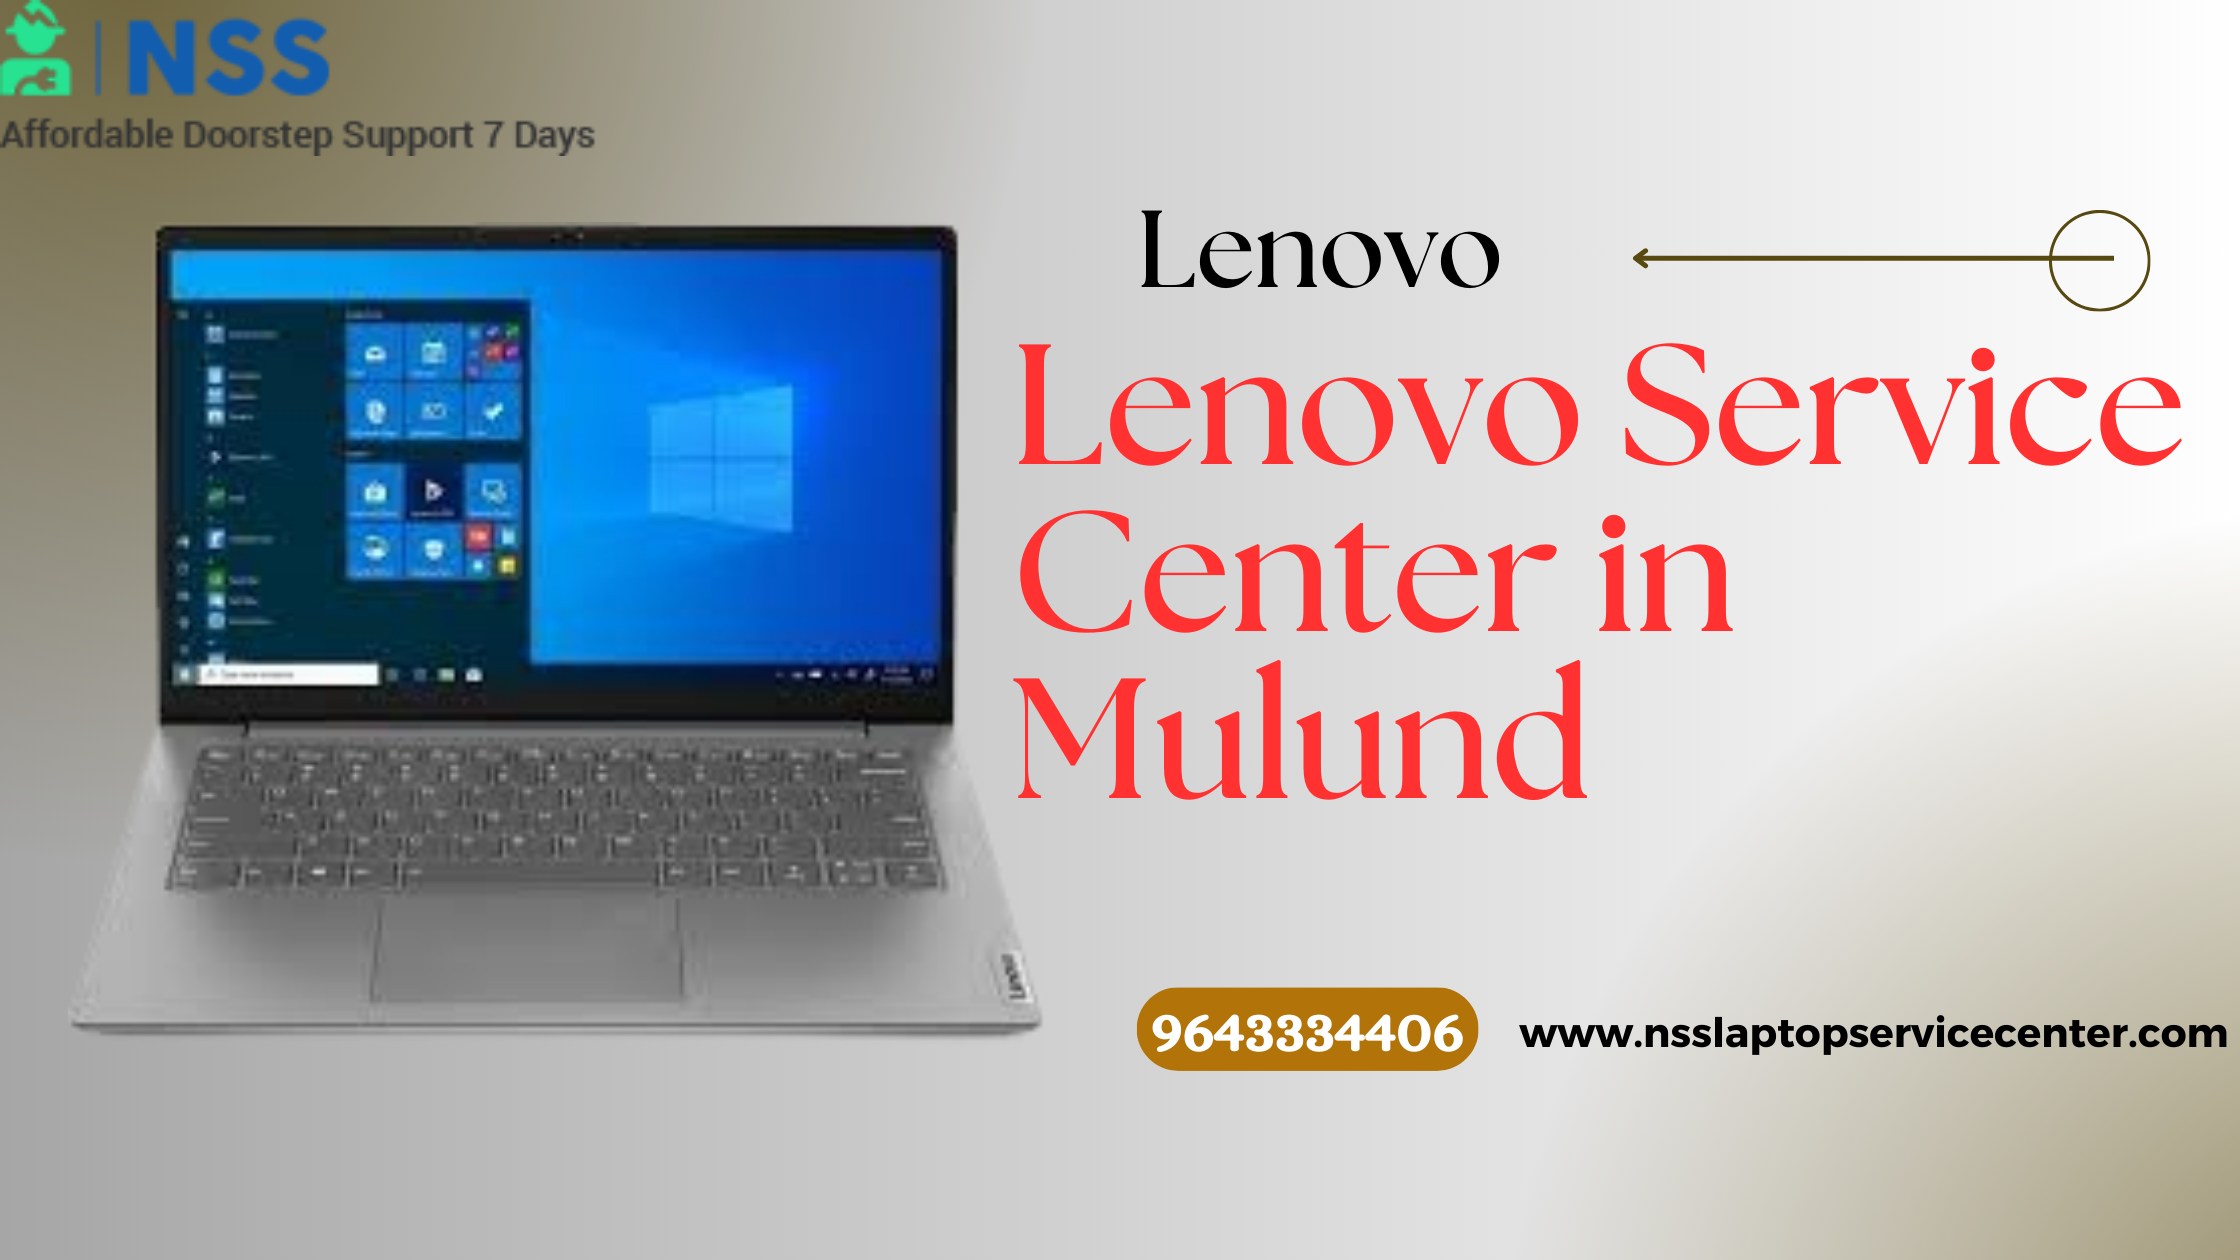 Lenovo Service Center in Mulund Near Mumbai